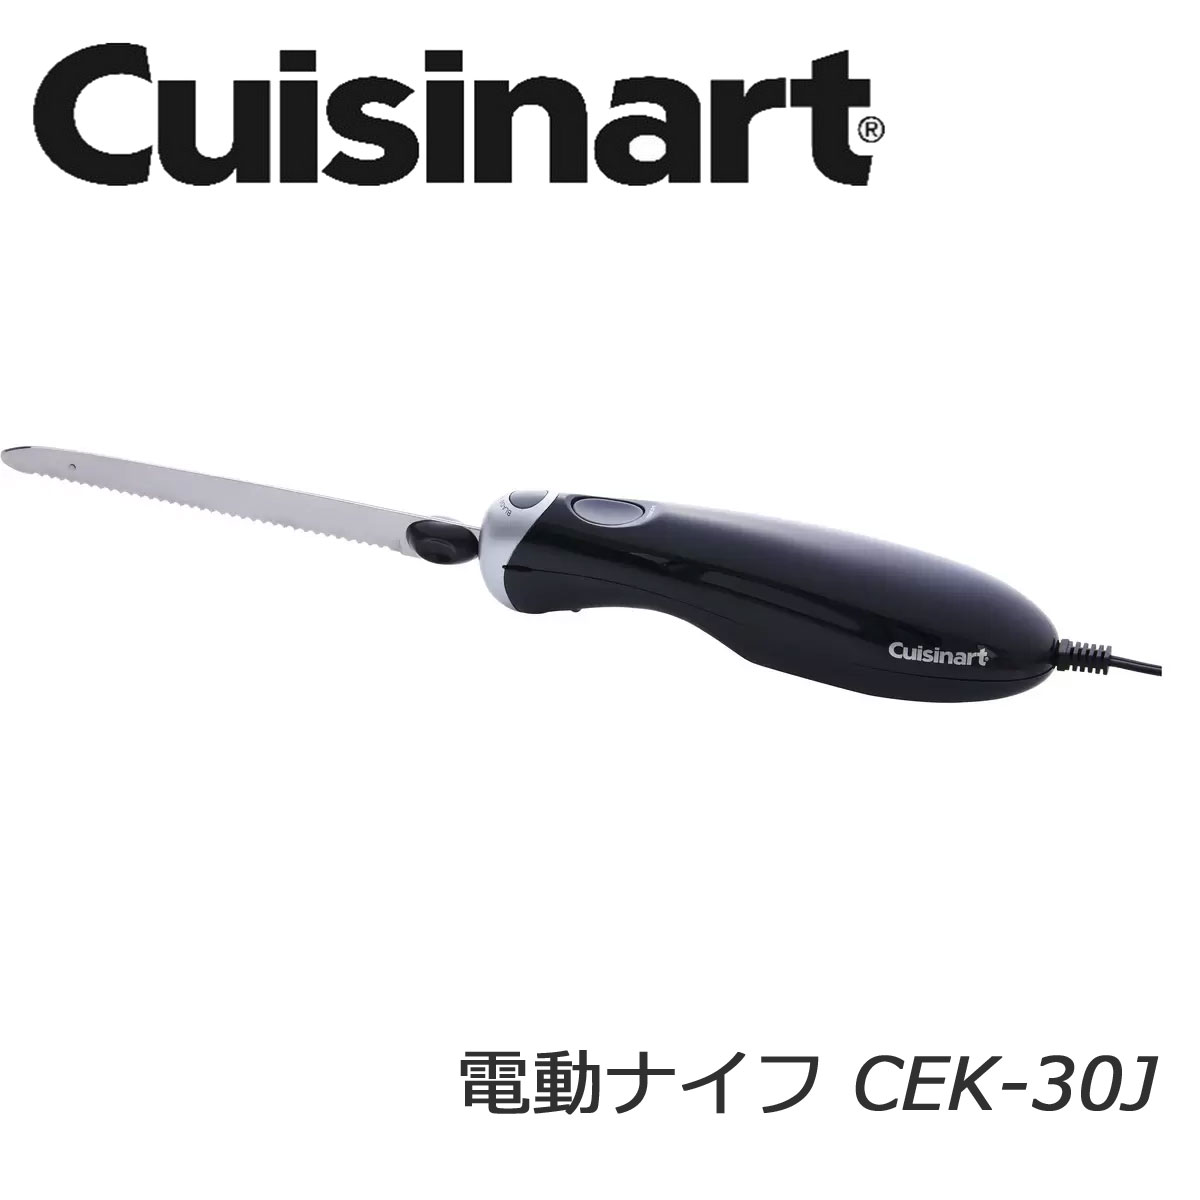 【送料無料】クイジナート 電動ナイフ CEK-30J 二枚ブレード つぶさず切れる 薄切り/ケーキ/パン/カバー付き/お手入れ簡単/CUISINART